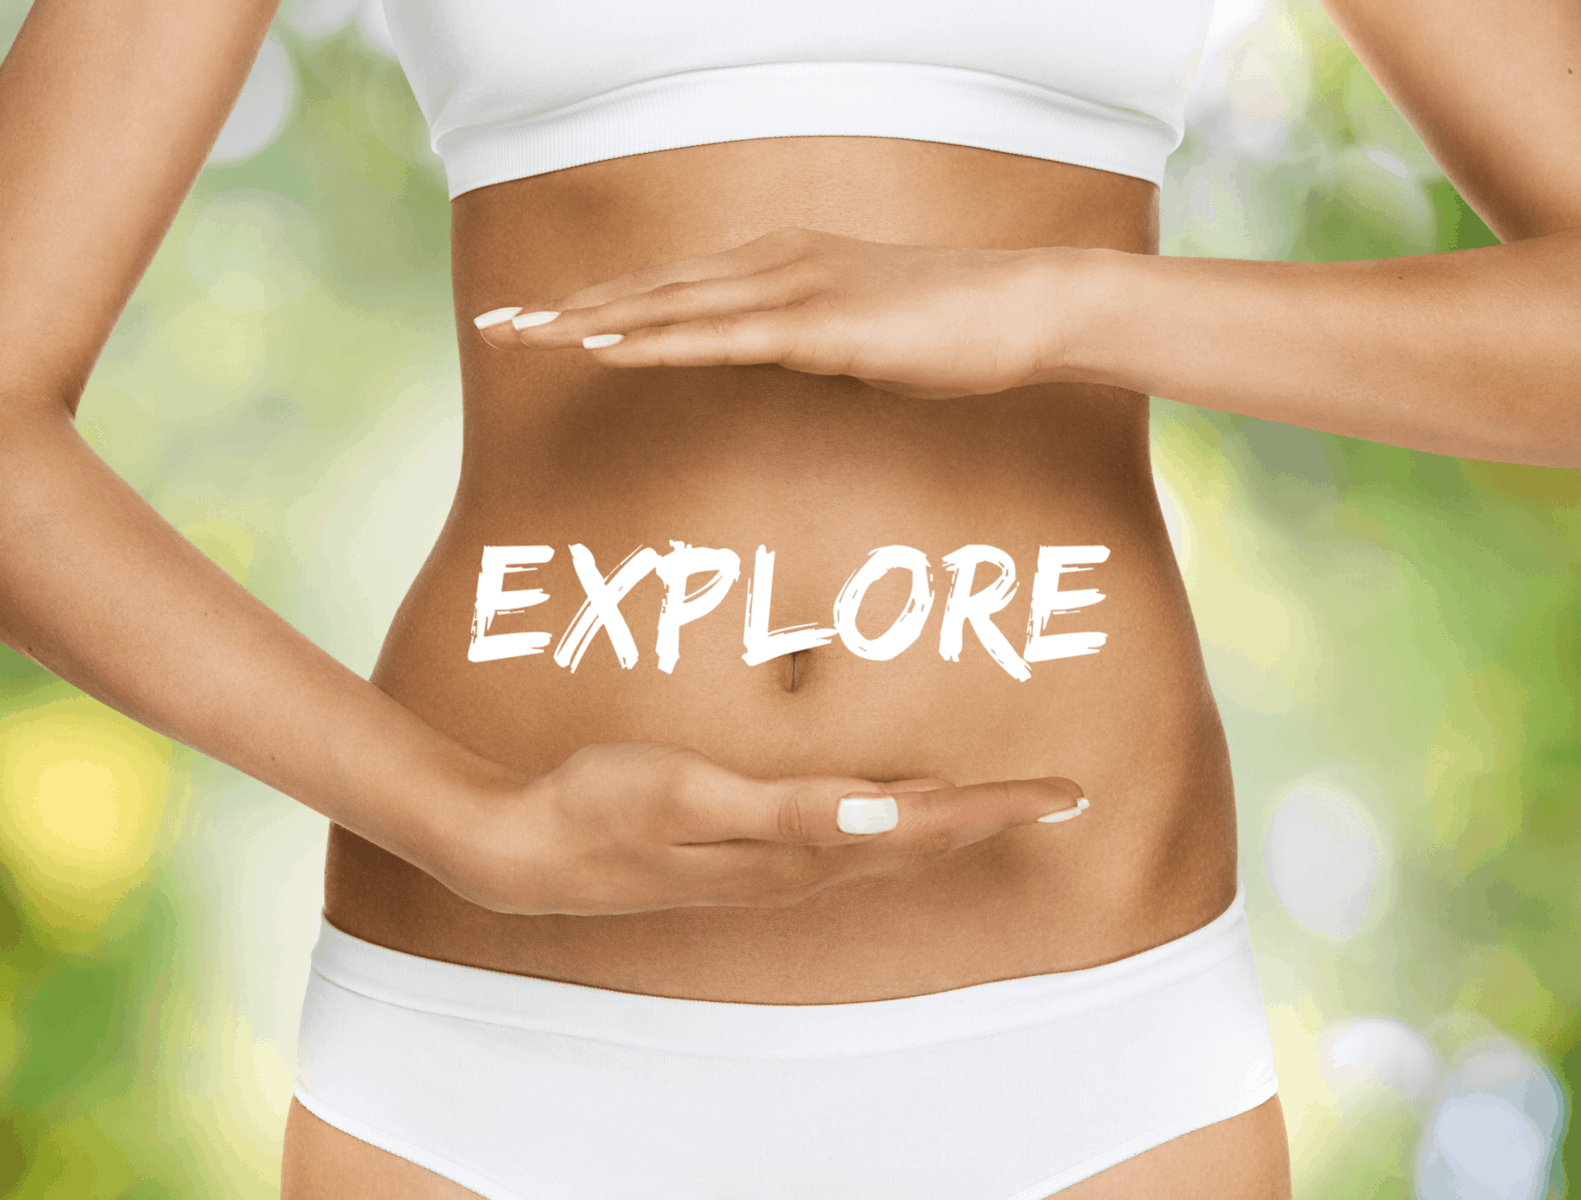 Explore your gut